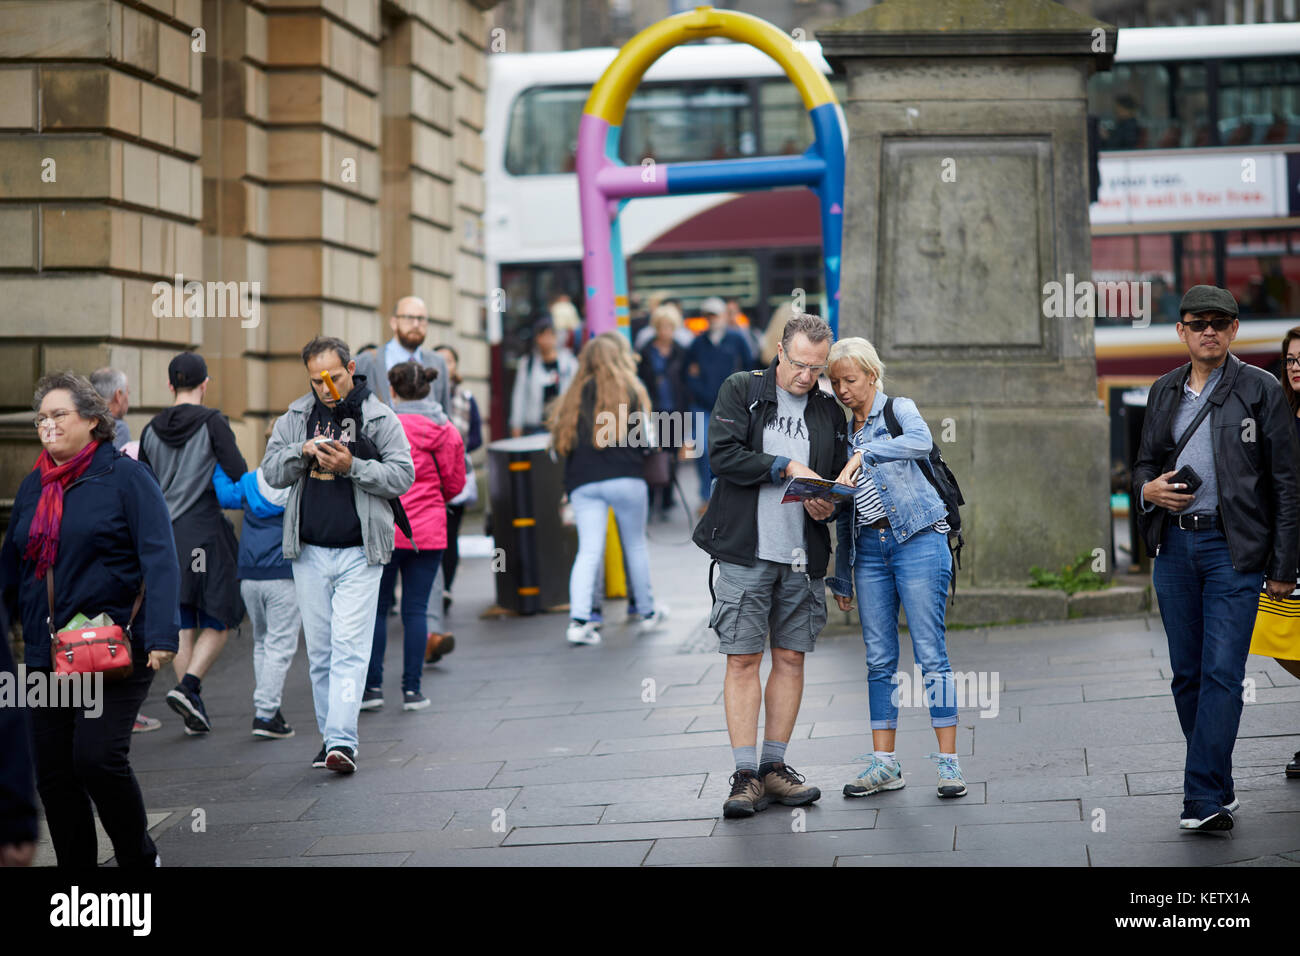 Edinburgh, Schottland, die Royal Mile Canongate verloren Touristen auf einer Karte in der Nähe einer gemalten Security Barrier suchen Stockfoto